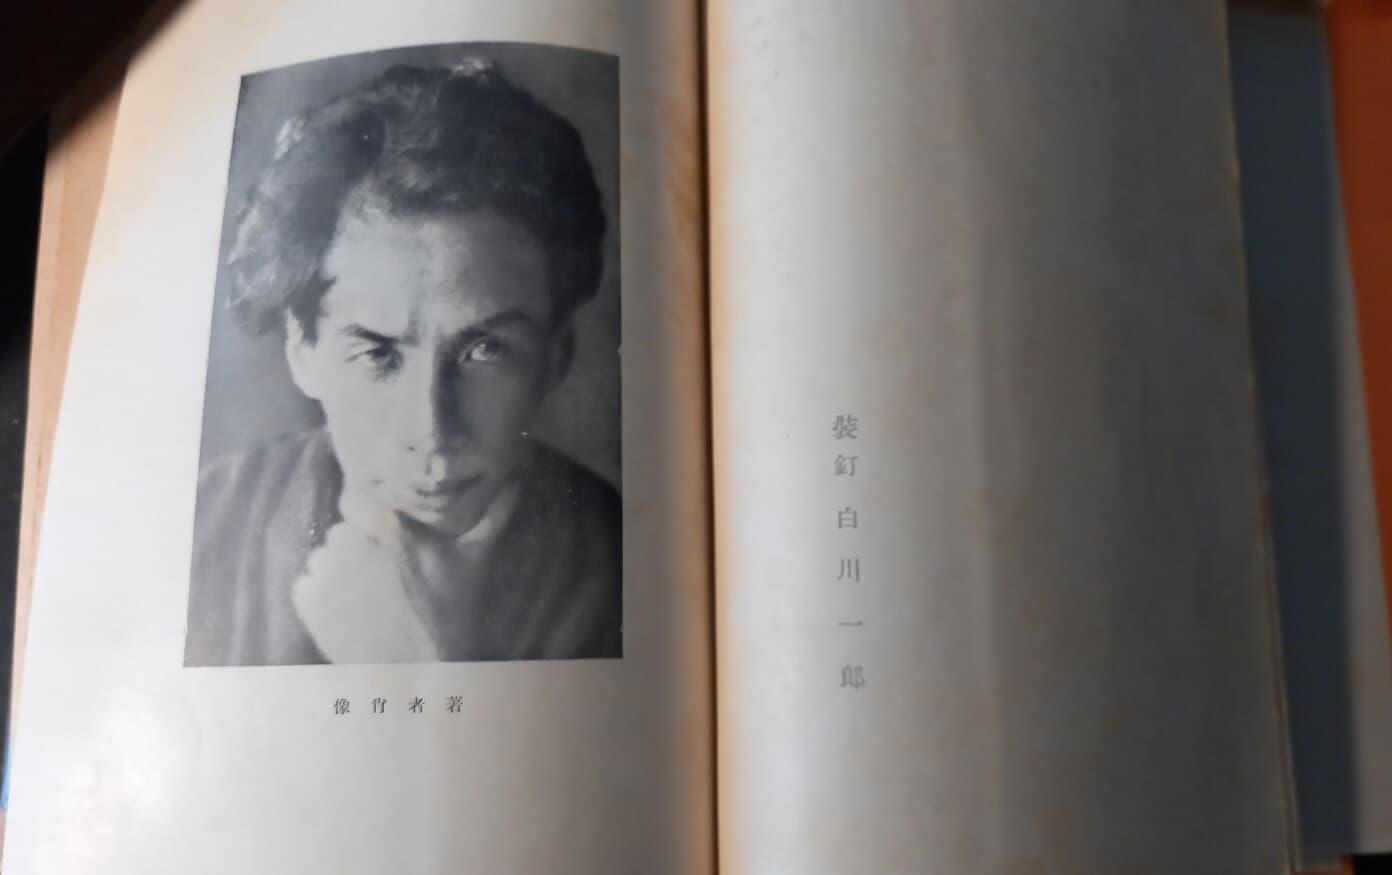 라쇼몽의 작가, 개천용지개집 芥川龍之介集 (일본어판, 현대문호명작전집1, 하출서방, 1953) 